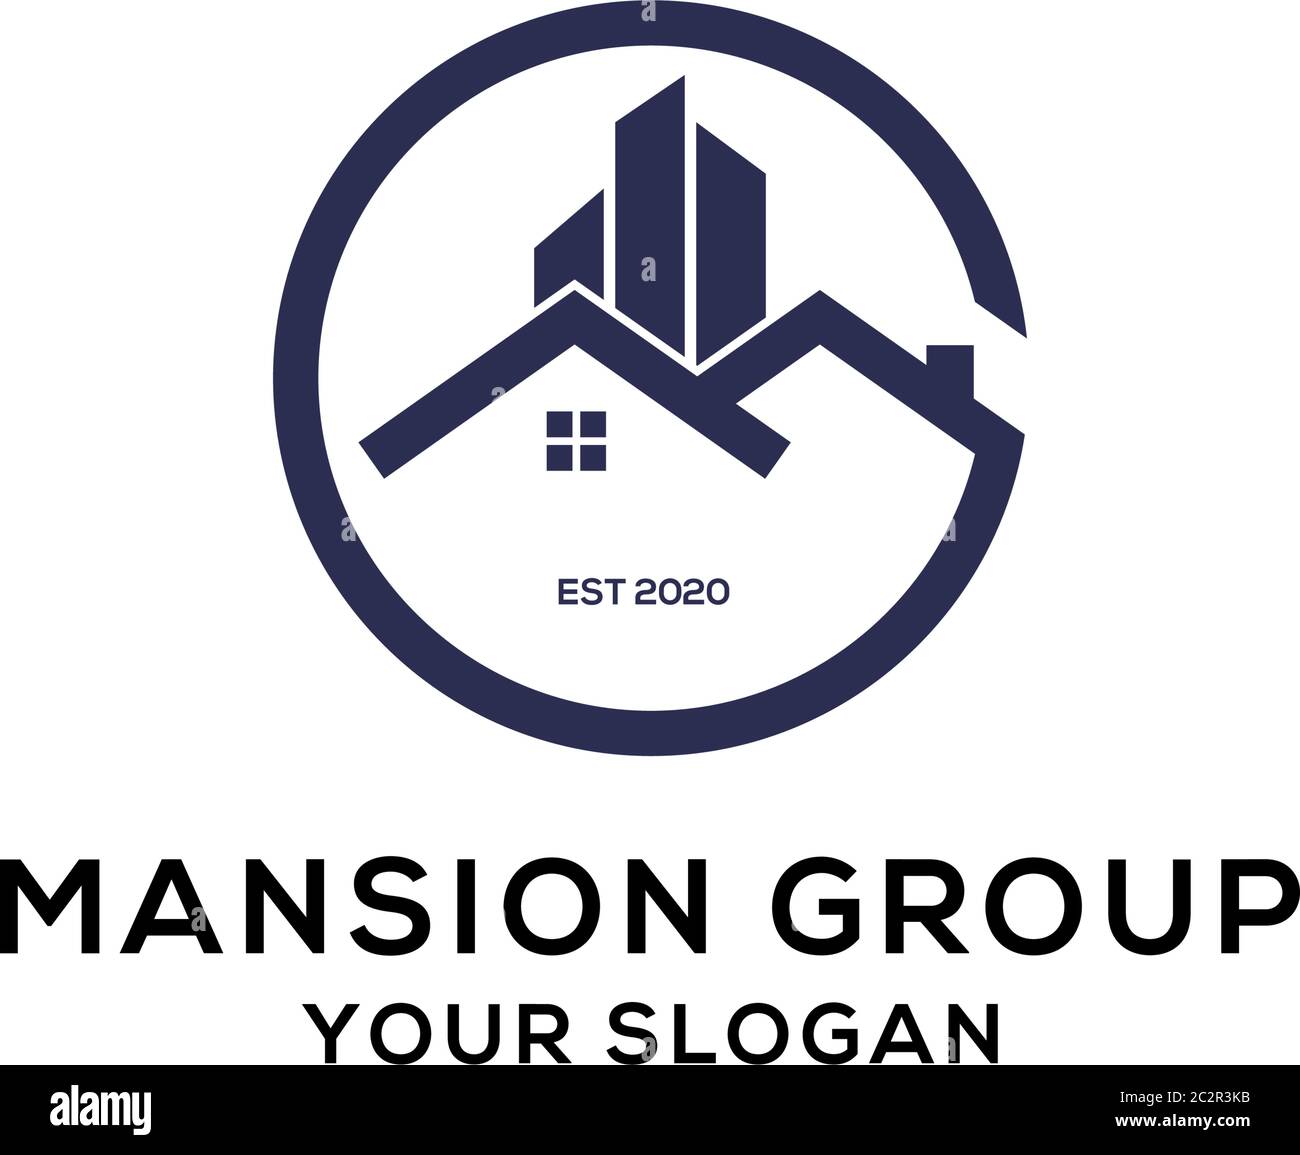 Mansion group logo design,creative real estate logo vector Stock Vector